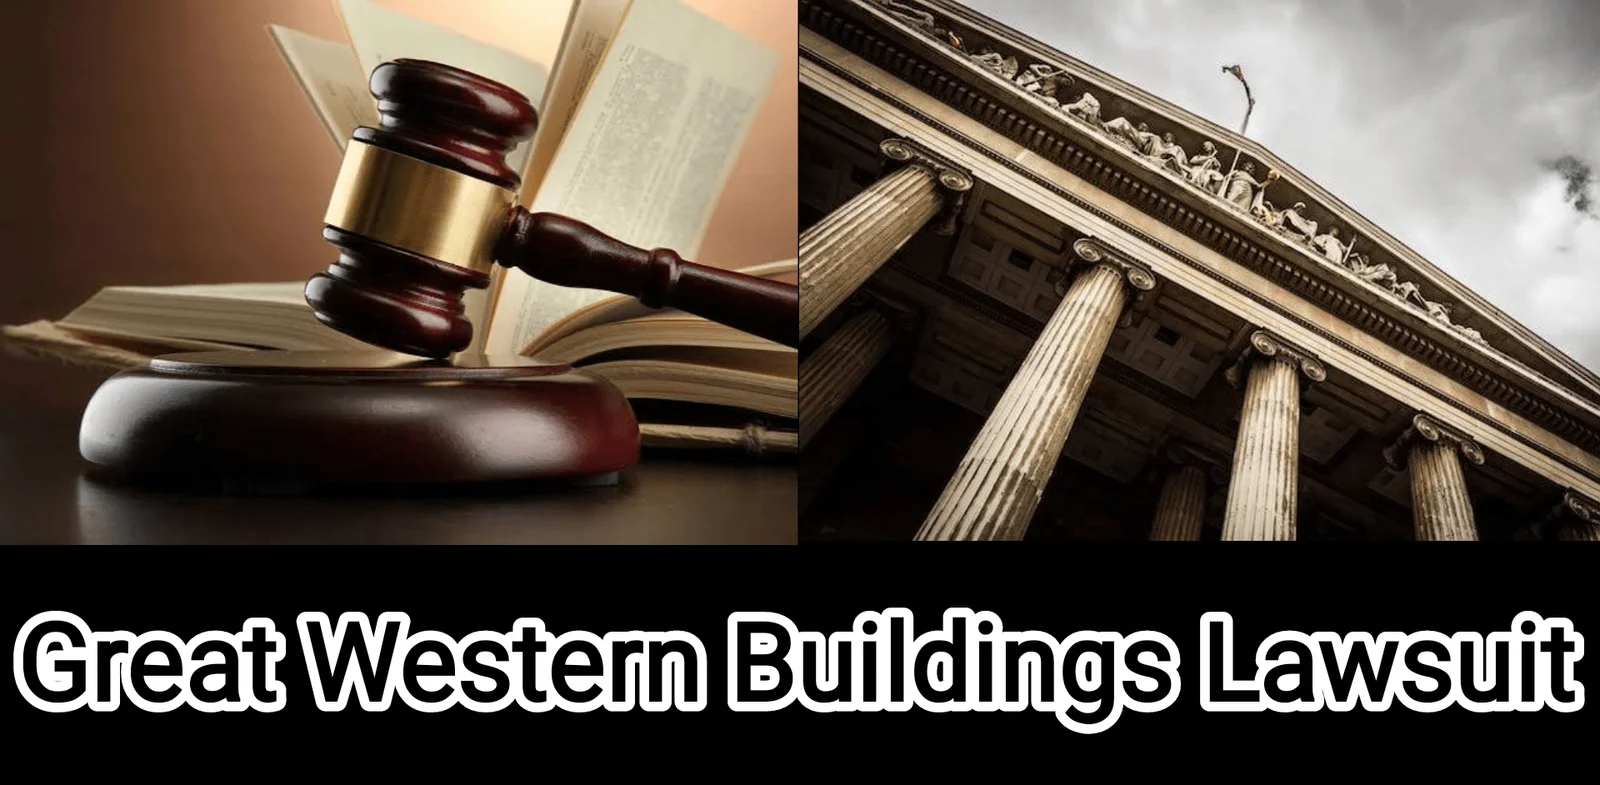 Great Western Buildings Lawsuit.webp